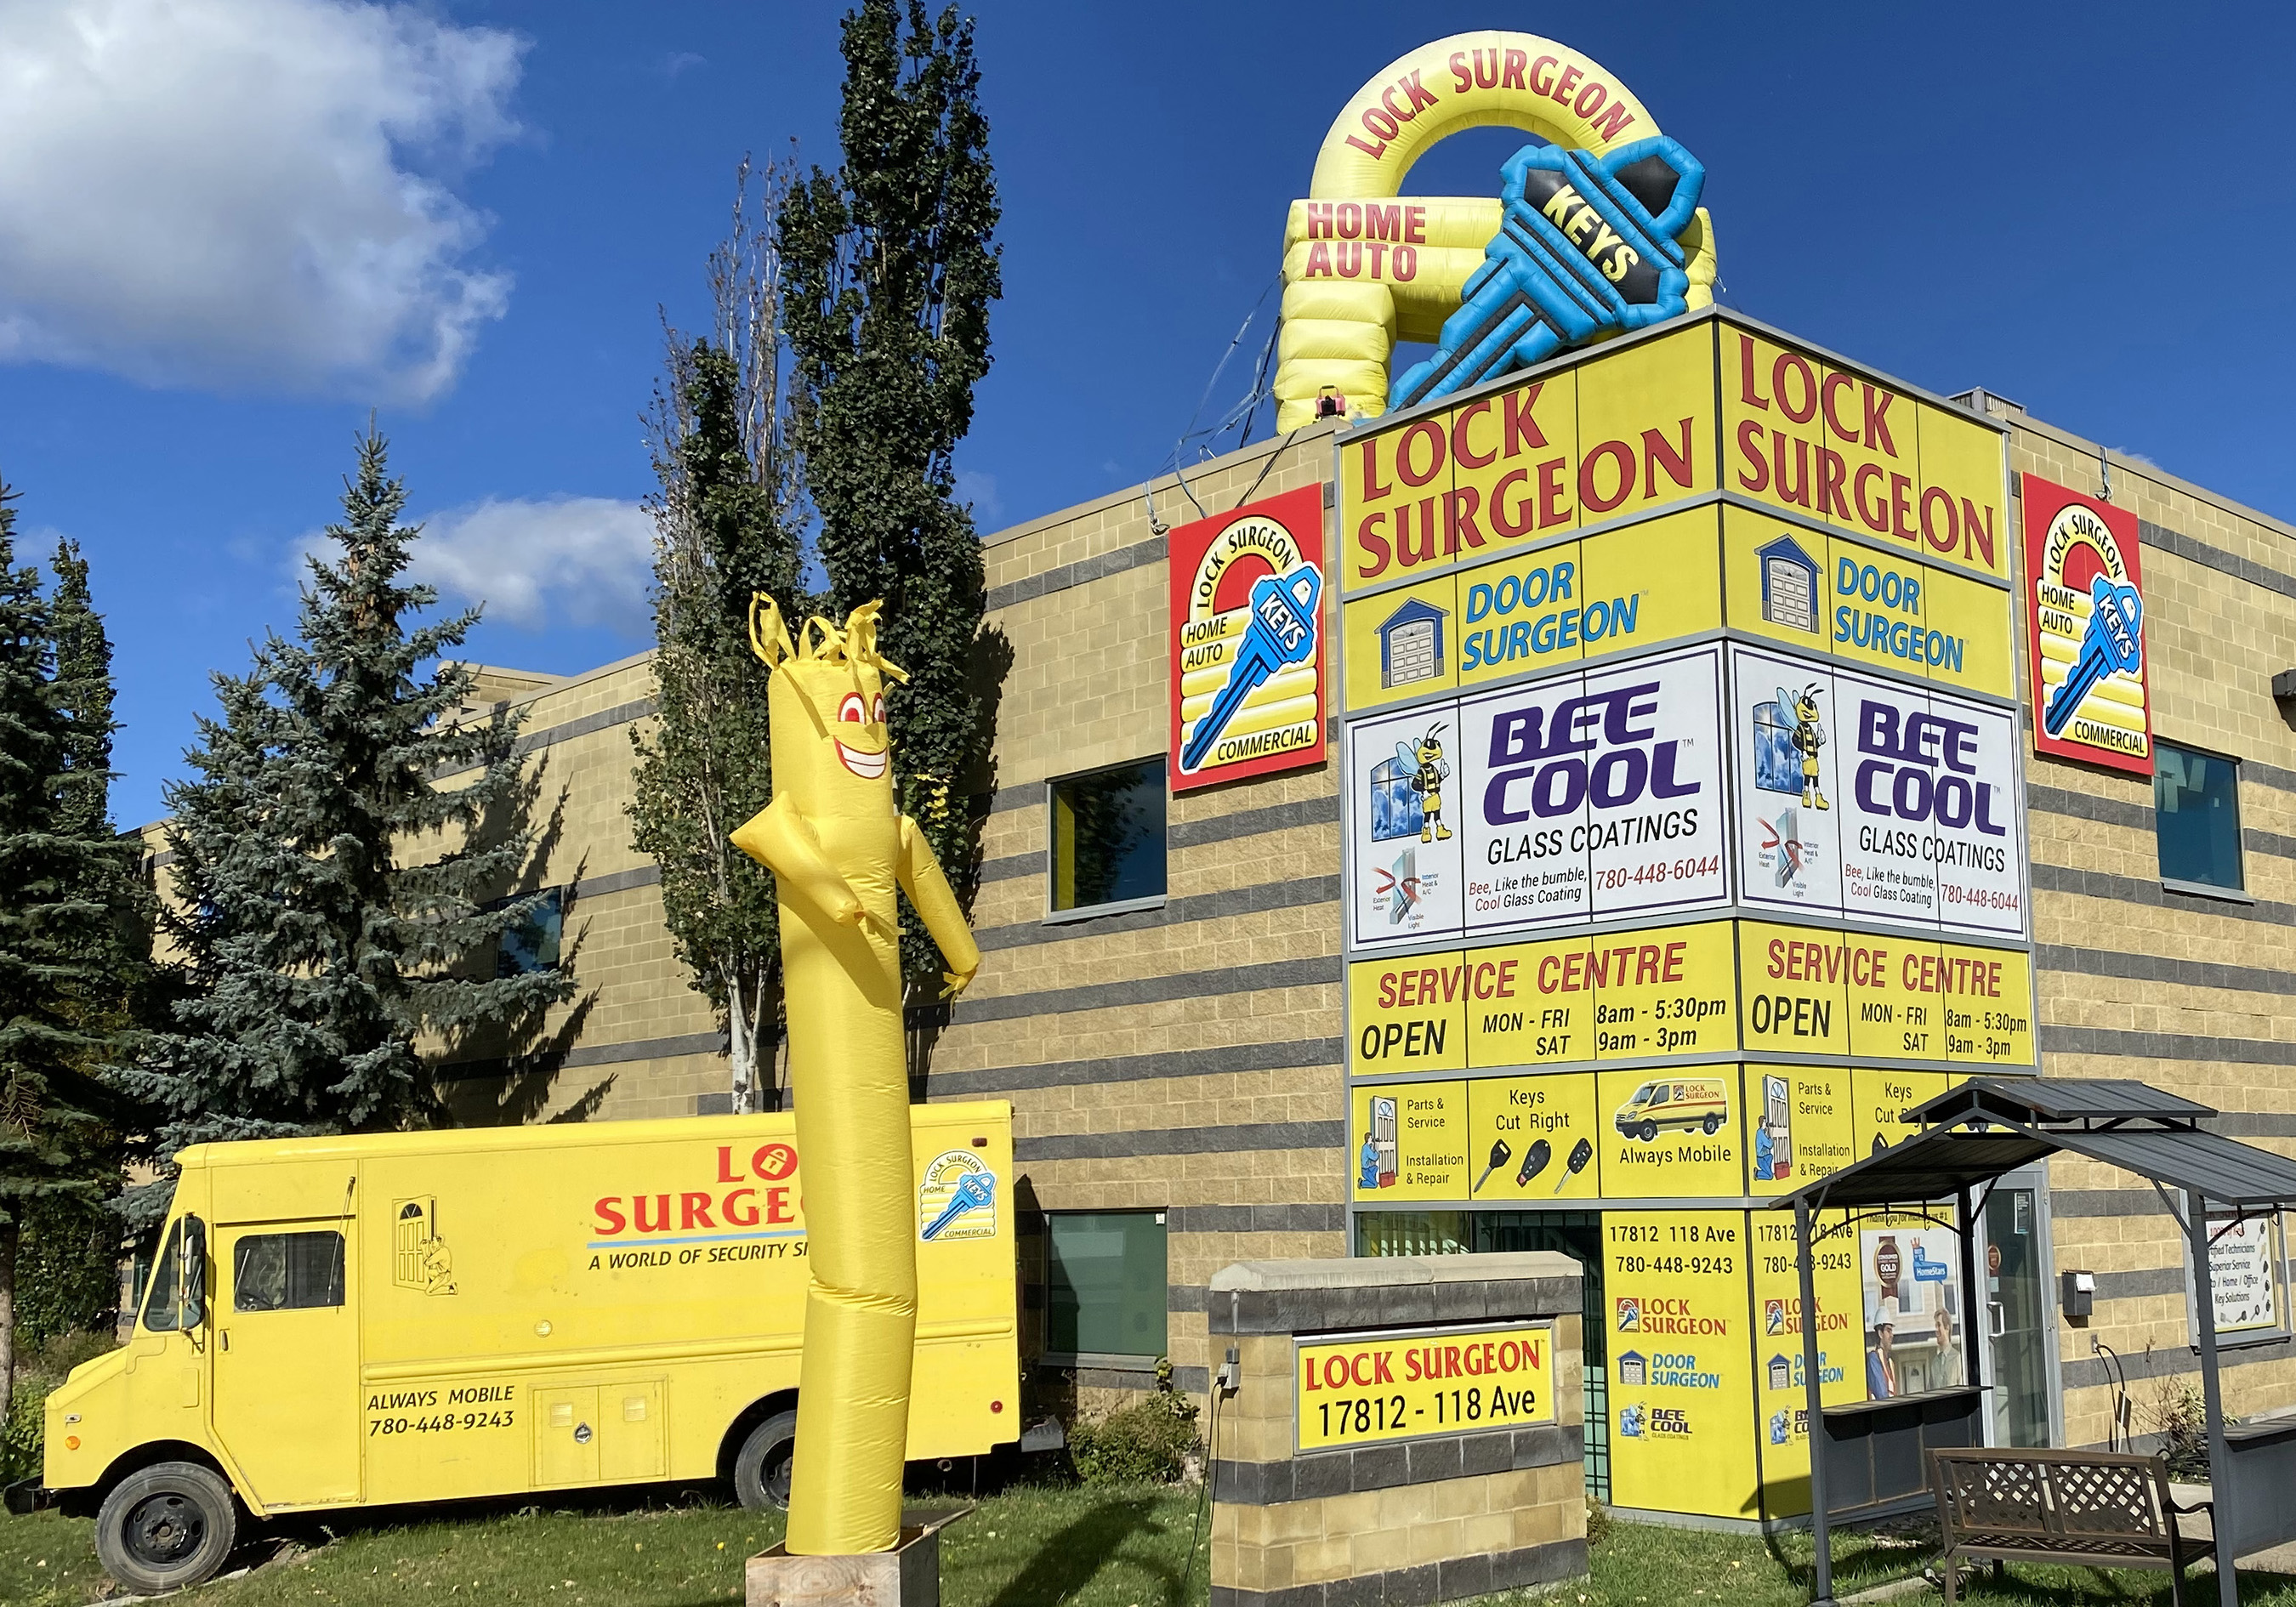 Edmonton Door Surgeon main location photo.